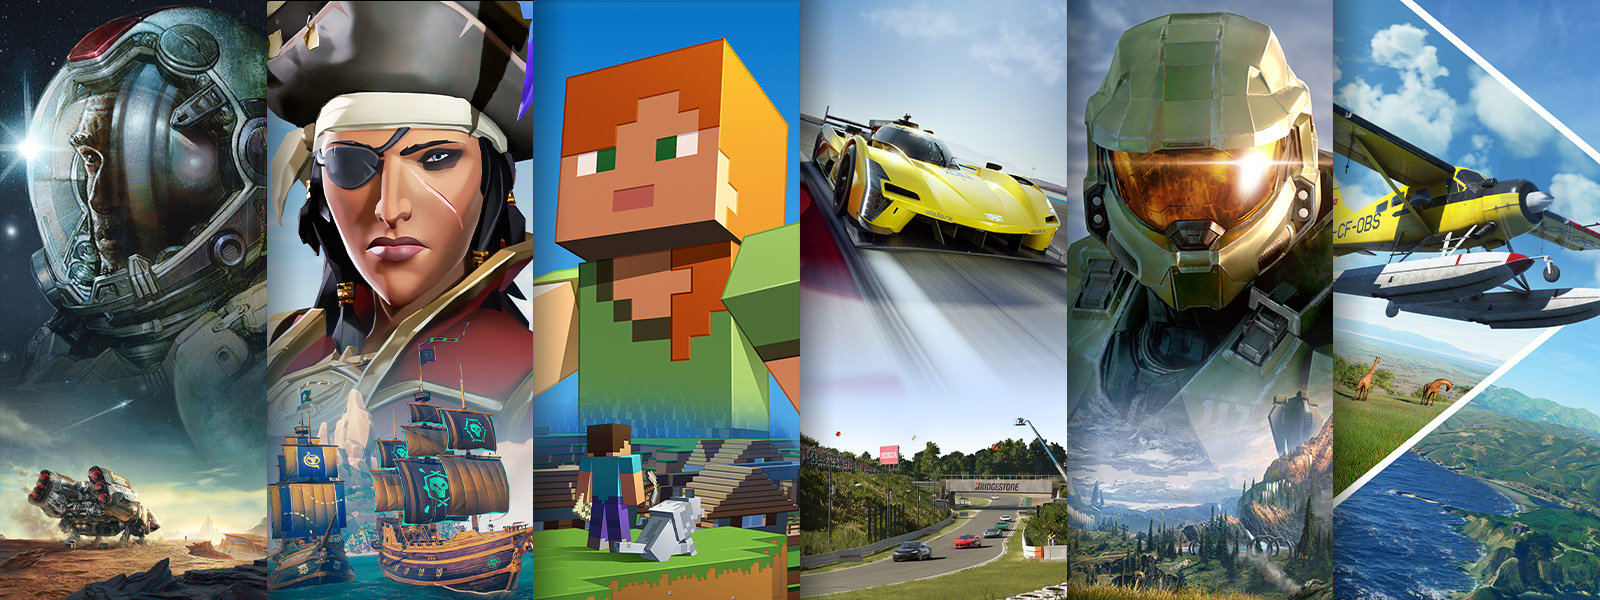 Cuatro escenas de cuatro videojuegos diferentes disponibles en Xbox Game Pass